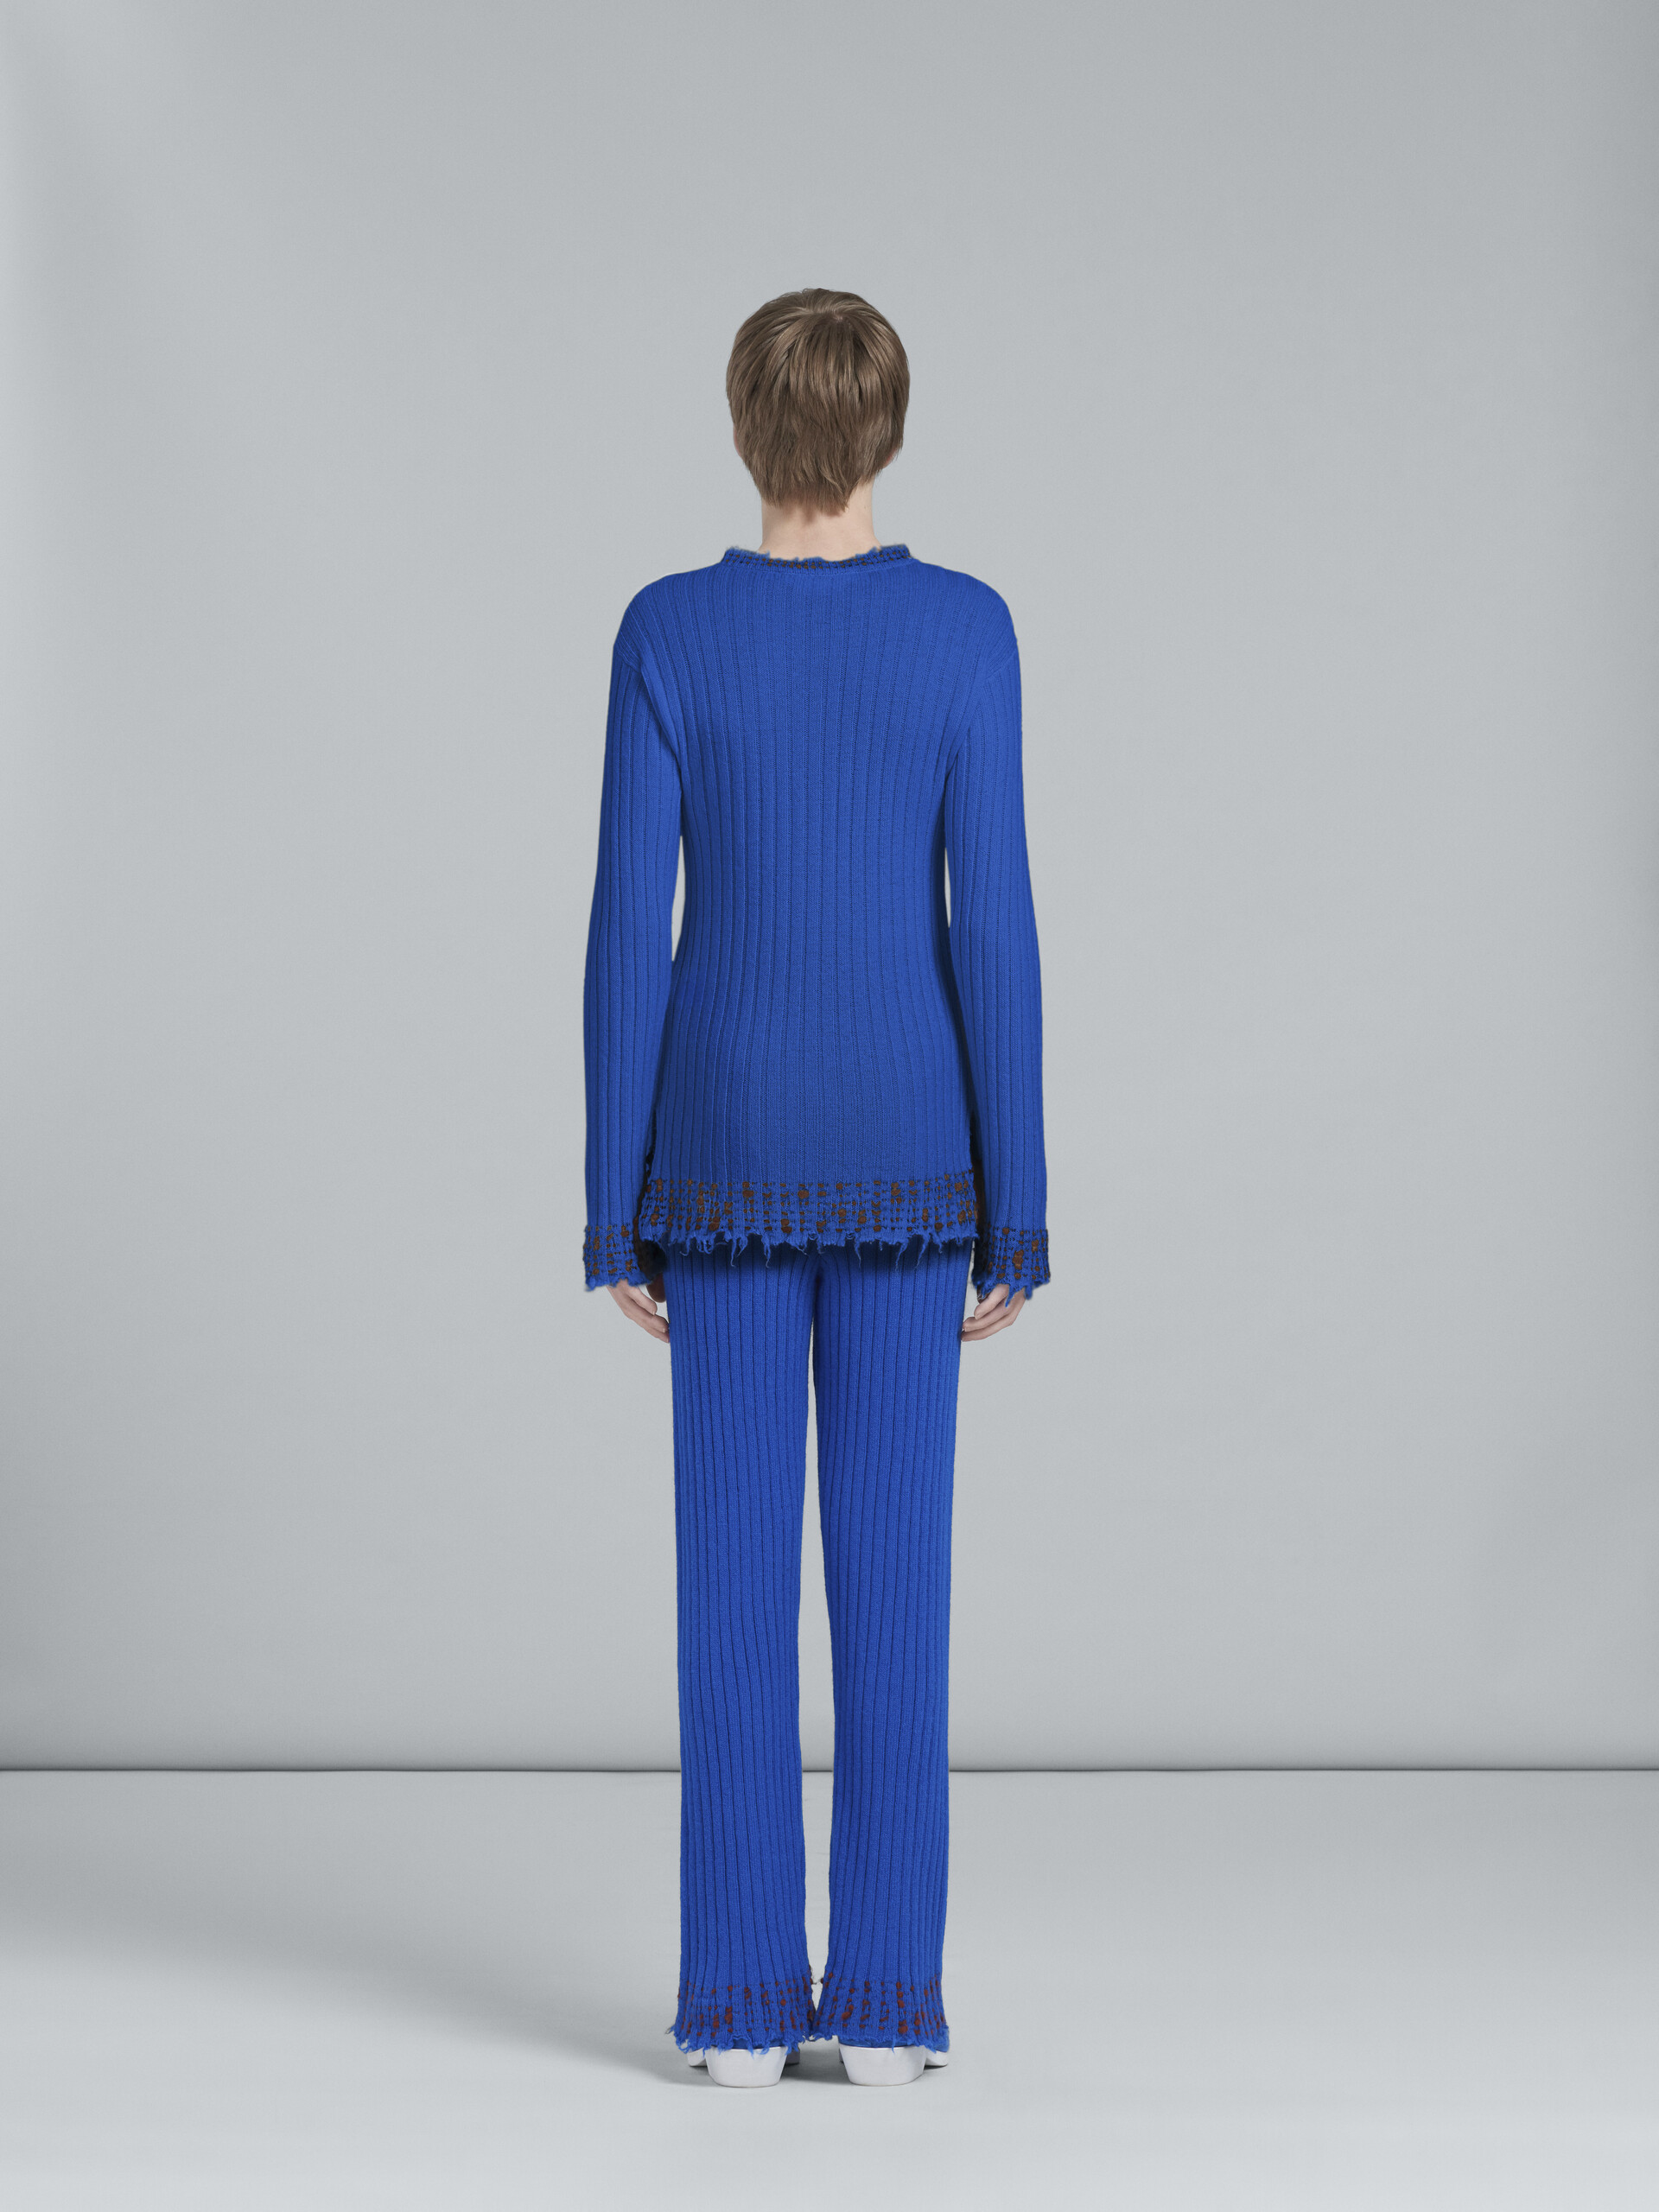 Blue wool knit sweater - Pants - Image 3